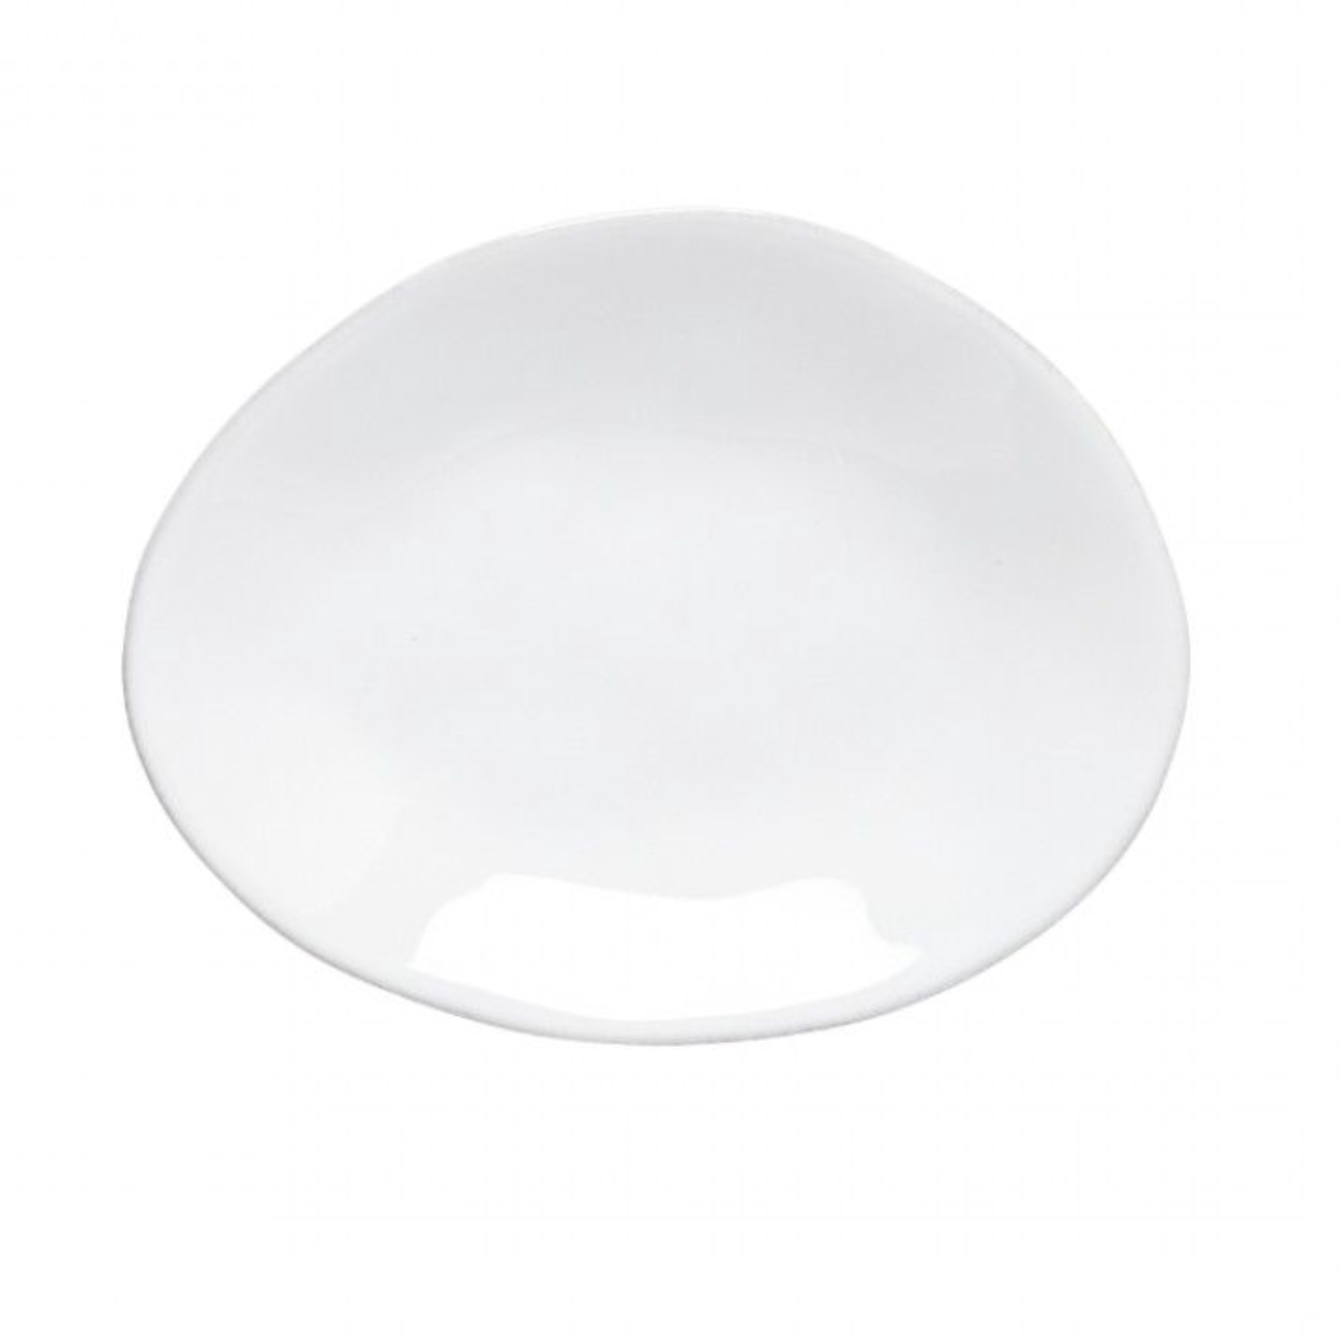 Livia Oval Plate, White